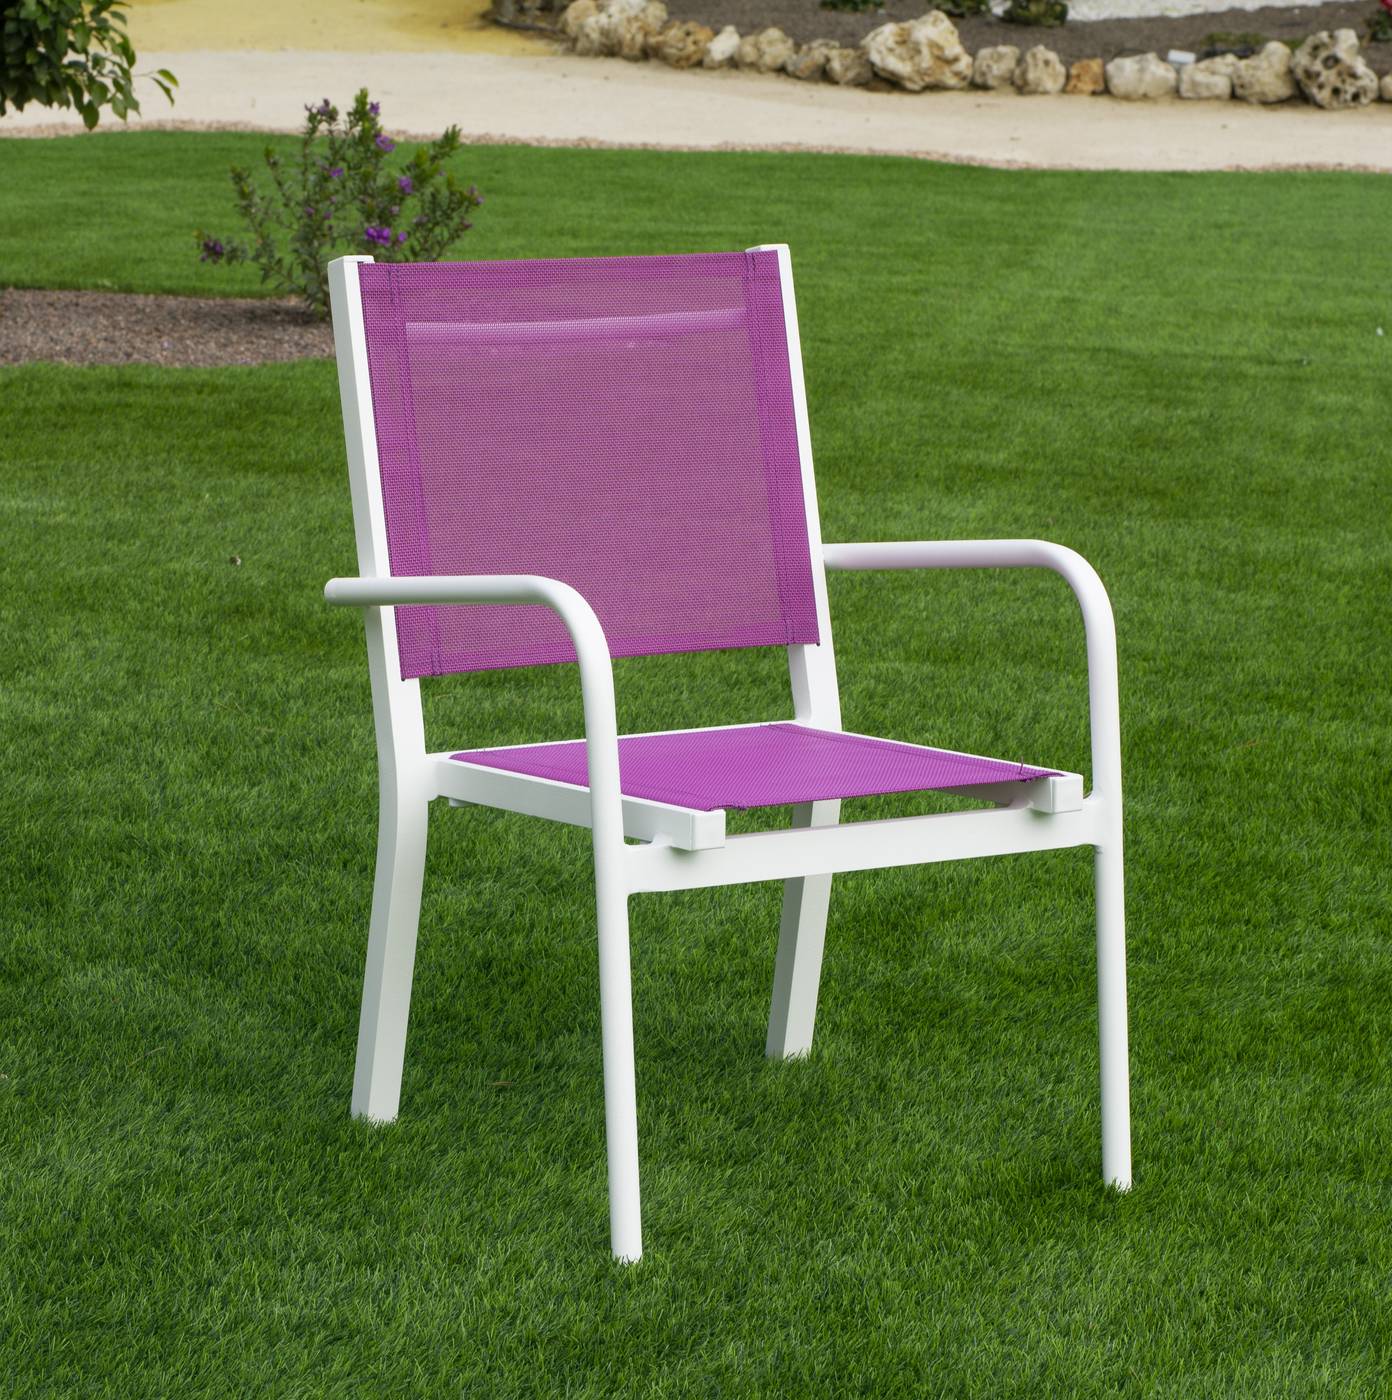 Sillón infantil de aluminio color blanco, con asiento y respaldo de textilen color azul o rosa.